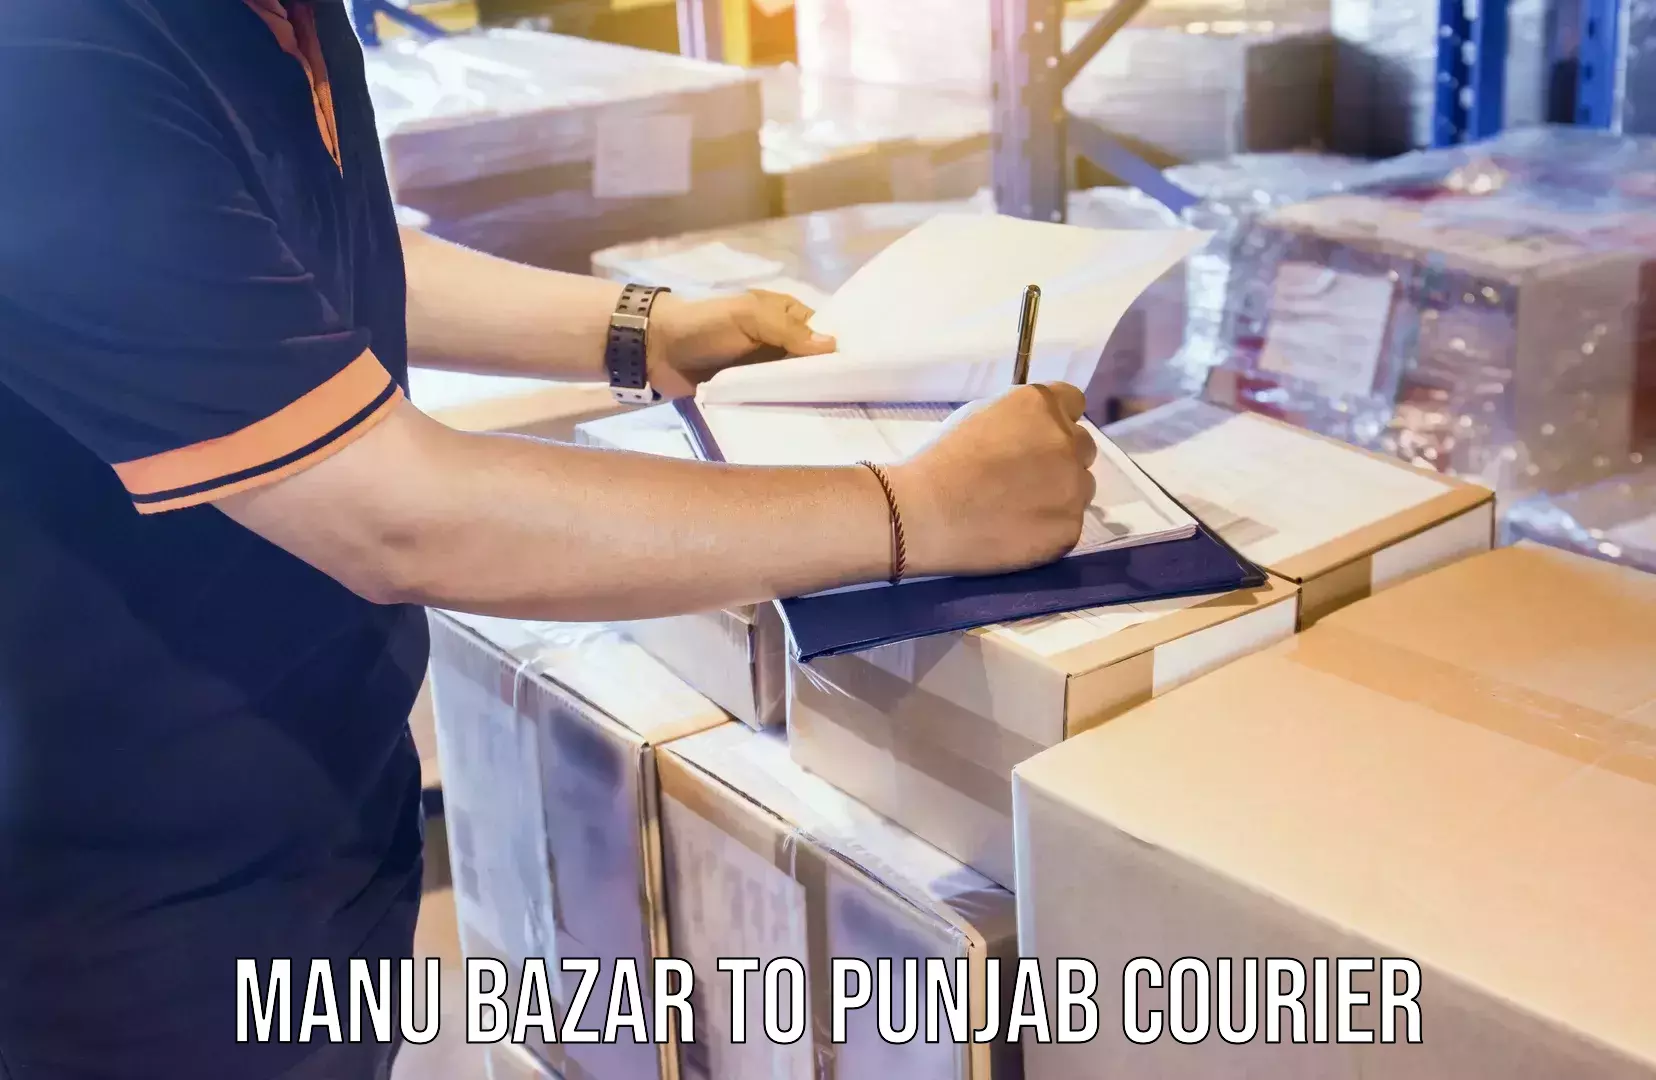 Efficient freight service Manu Bazar to Punjab